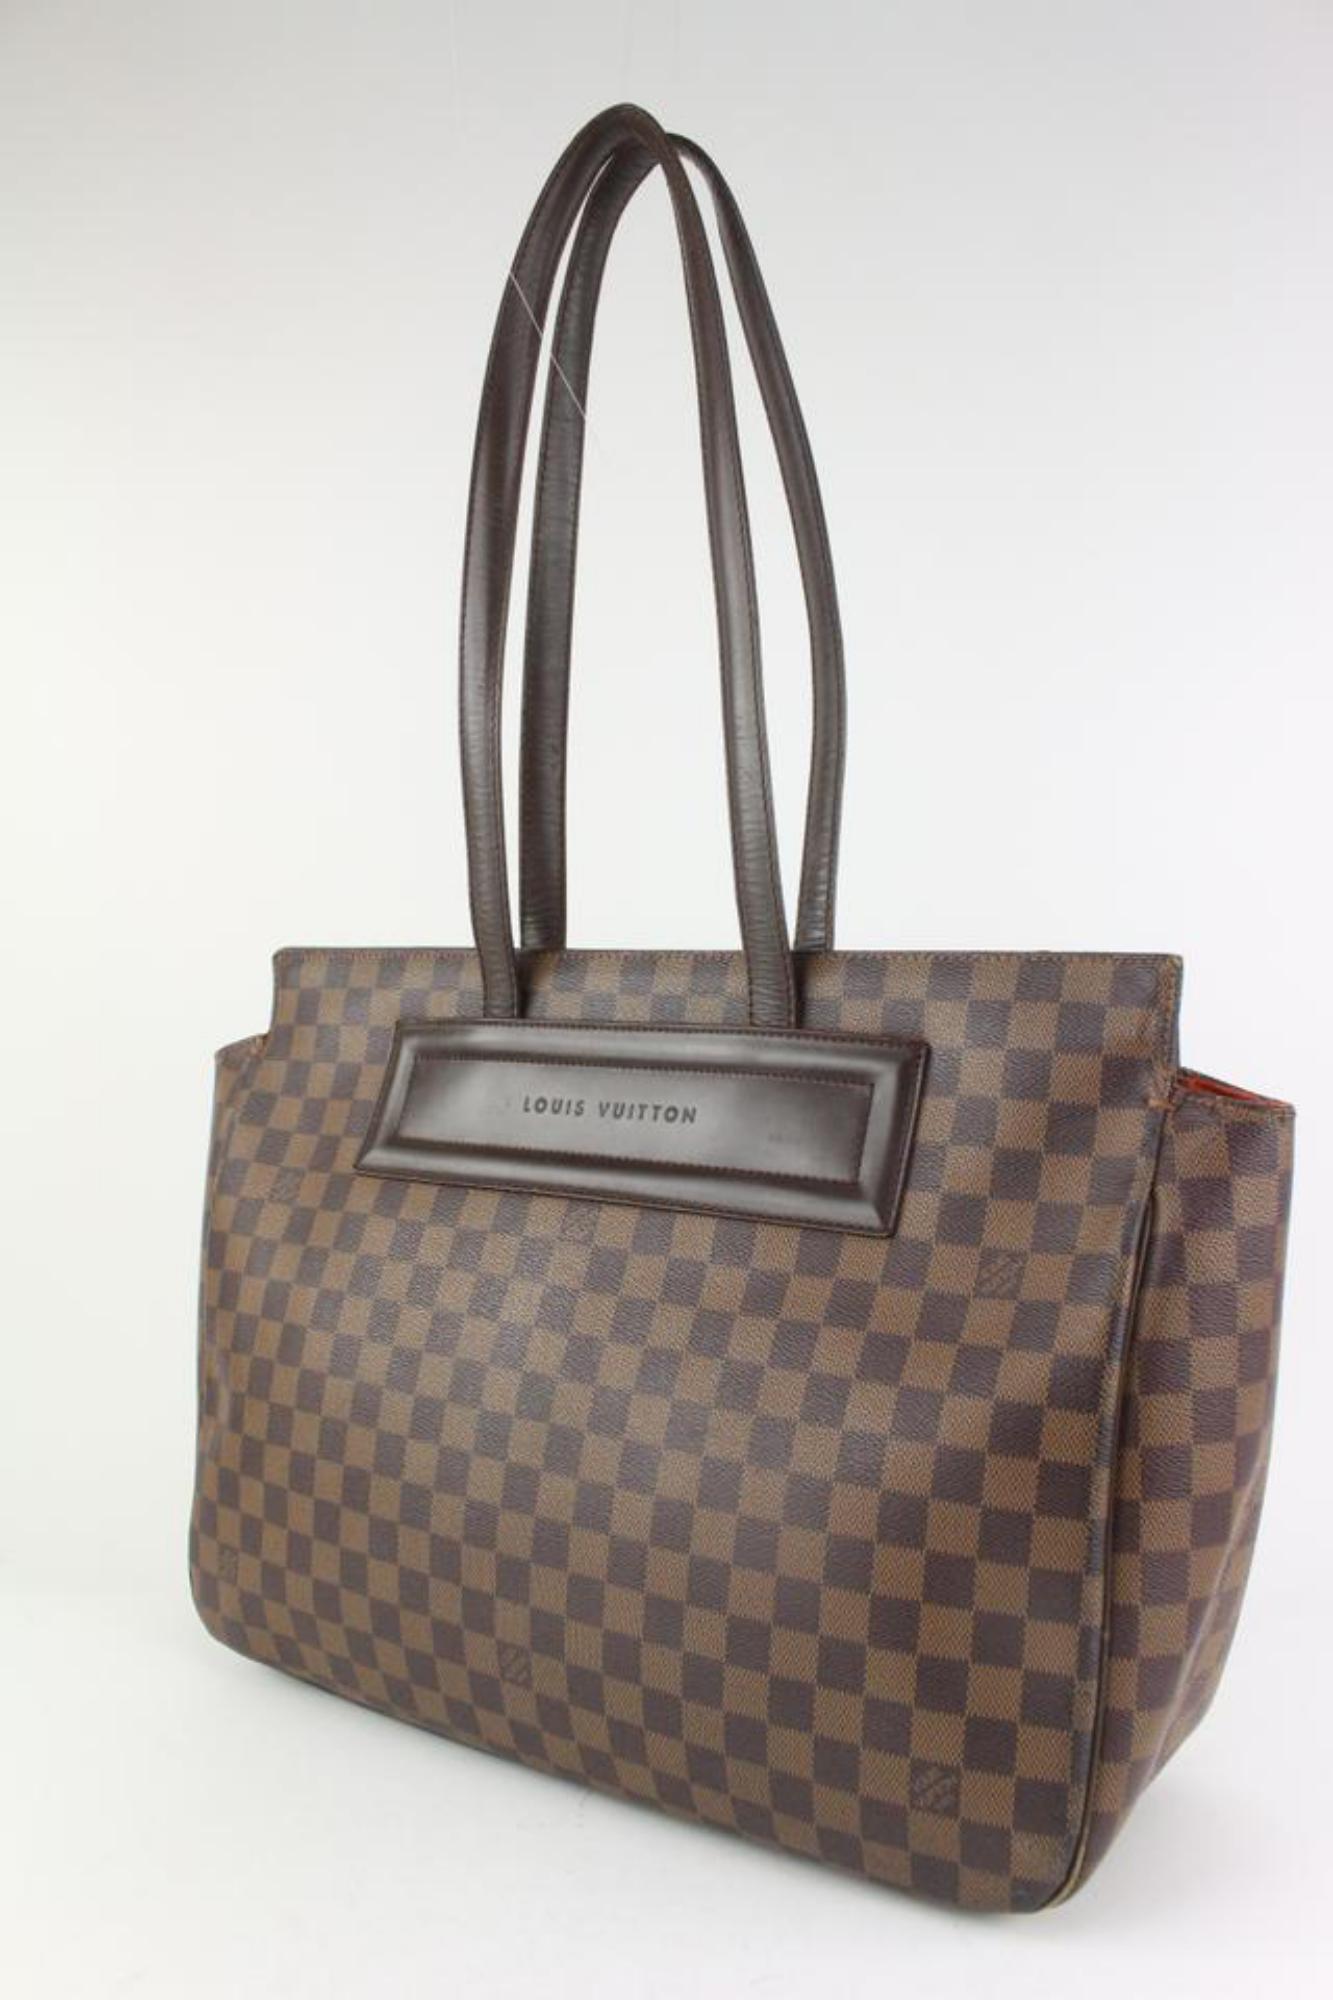 Louis Vuitton Damier Ebene Parioli Tote bag s127LV0
Code de date/Numéro de série : AR0979
Fabriqué en : France
Mesures : Longueur :  16.5